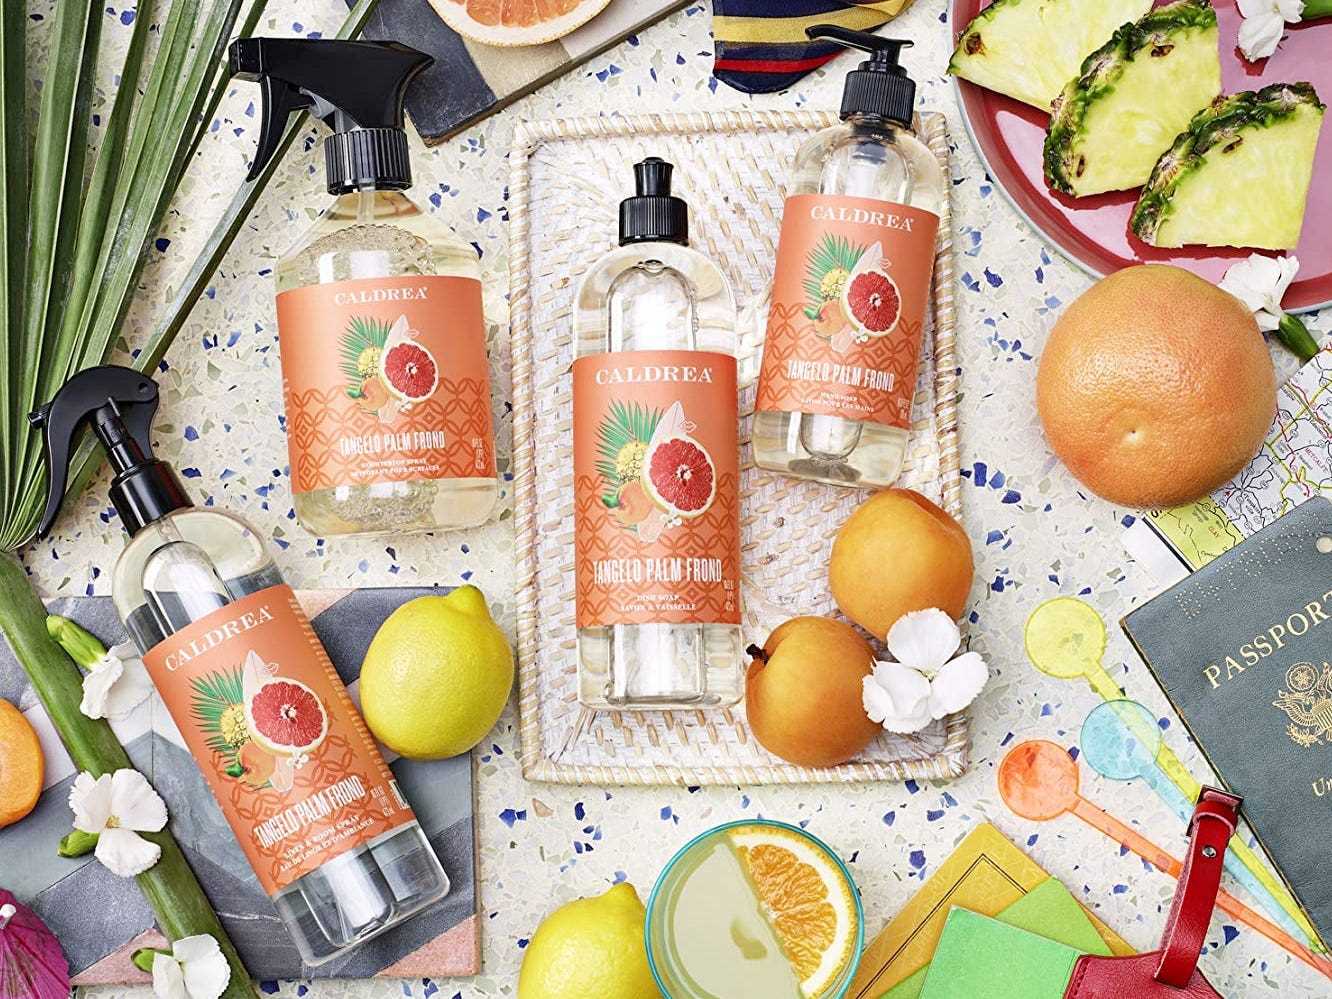 Vier Flaschen Caldera-Reiniger liegen neben Orangen, einem Reisepass und anderen Gegenständen, den besten natürlichen Reinigungsprodukten im Jahr 2022.